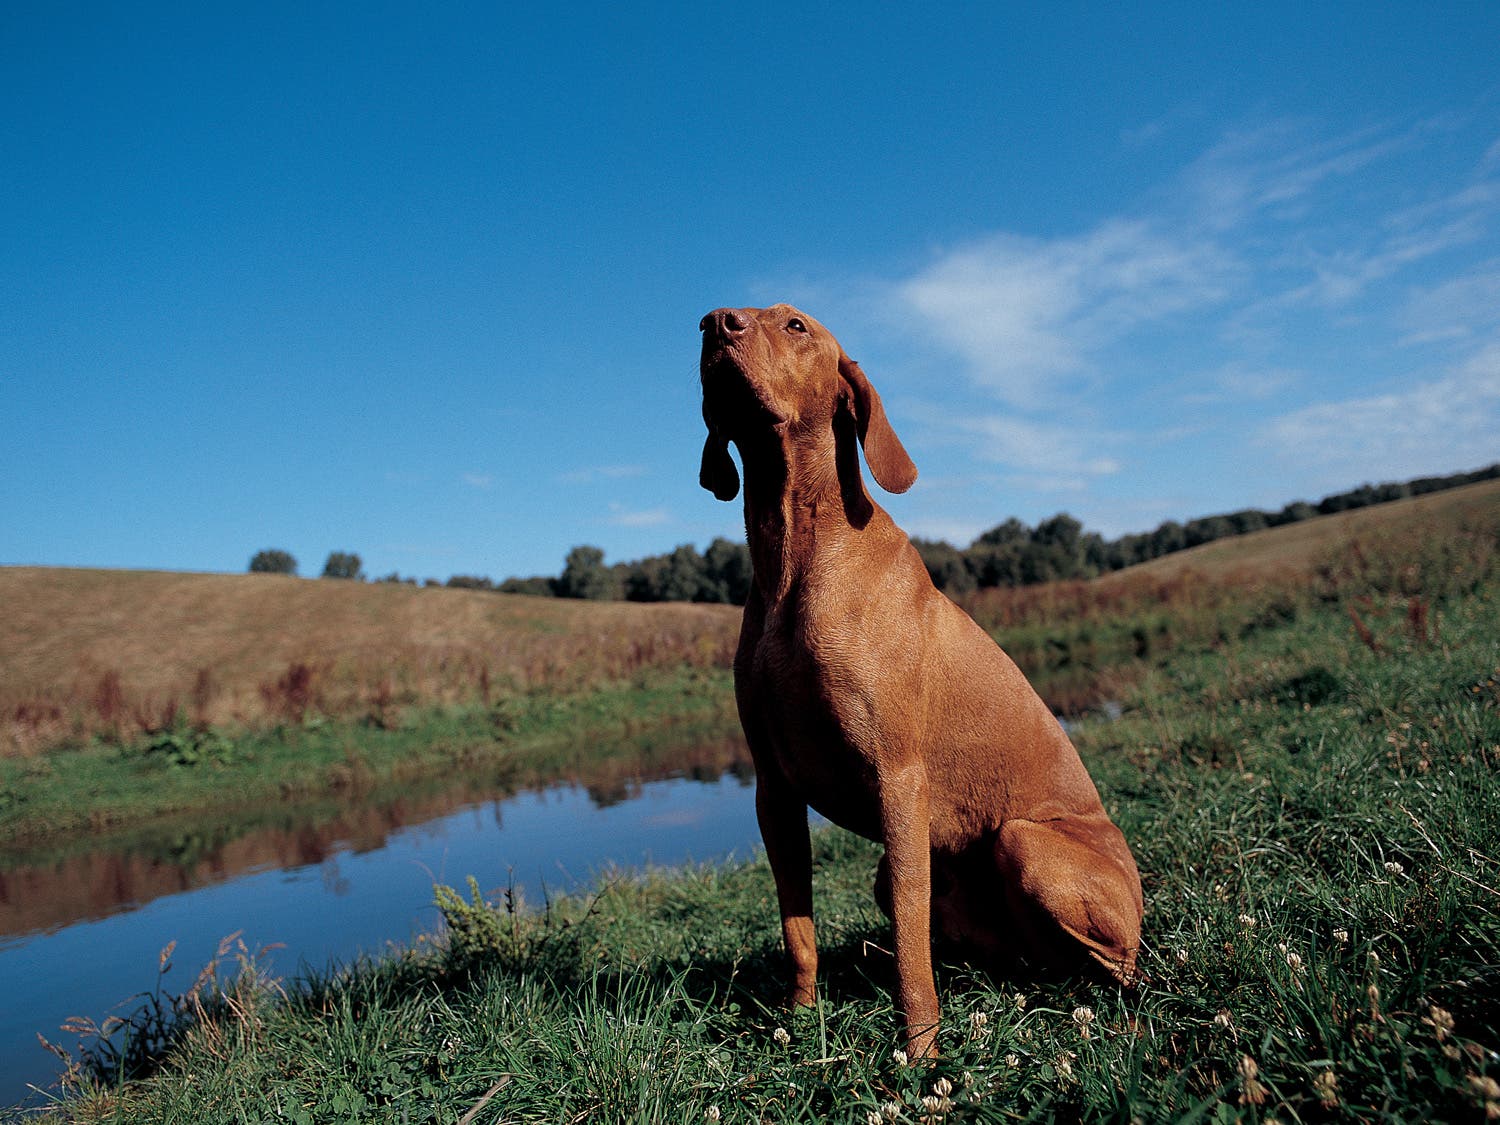 Dog sitting in a field near a pond